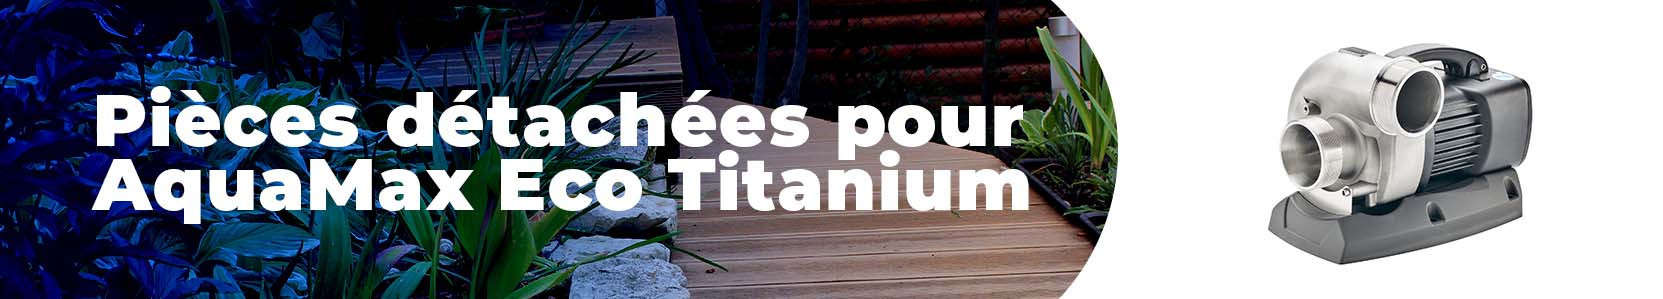 Pièces détachées pour AquaMax Eco Titanium oase